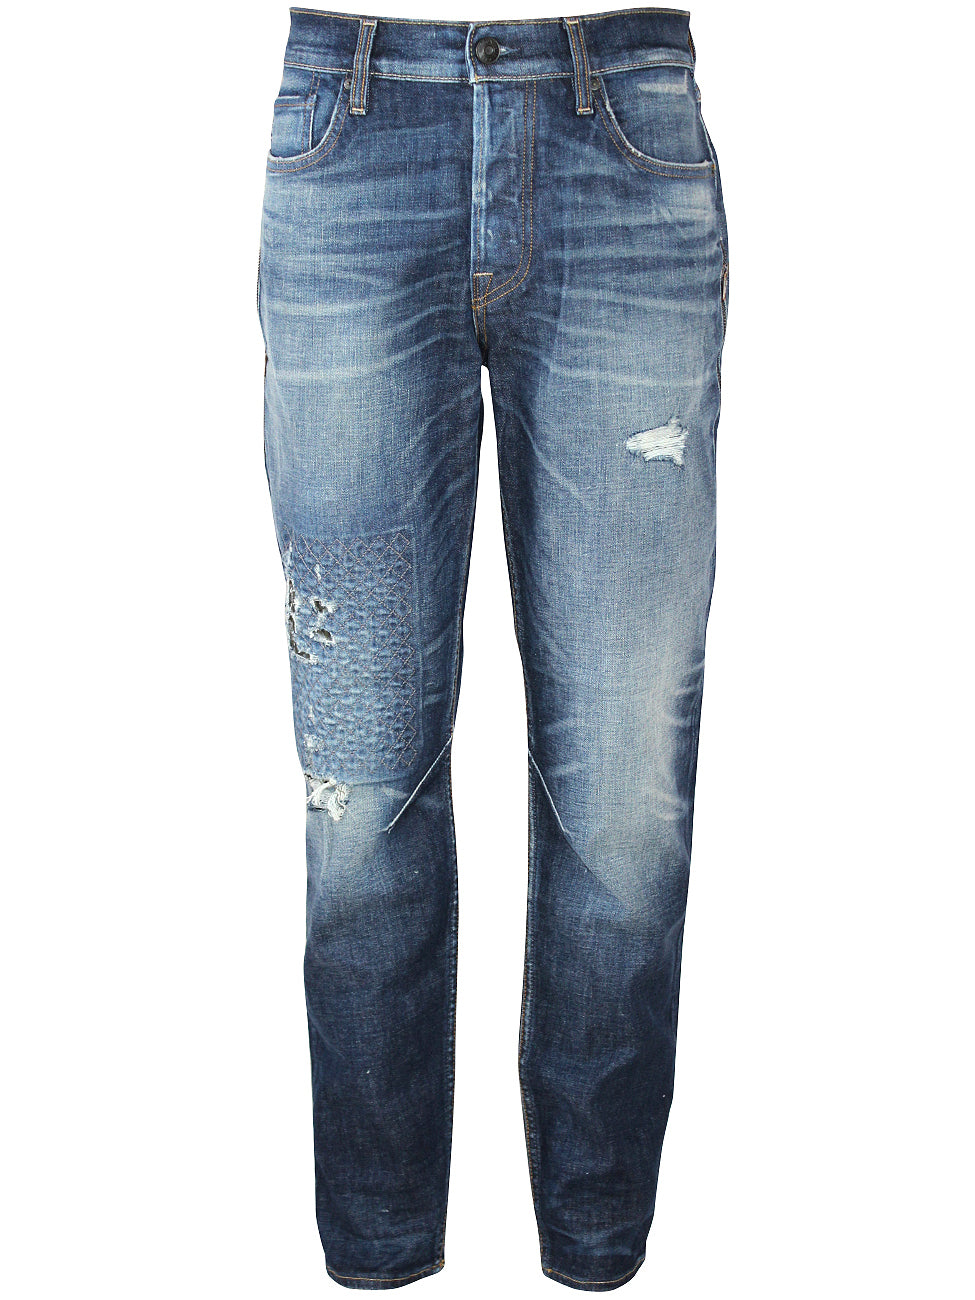 Hudson Mens Sartor Relaxed Skinny Jeans w Zipper Details M721DKO Gunner Blue